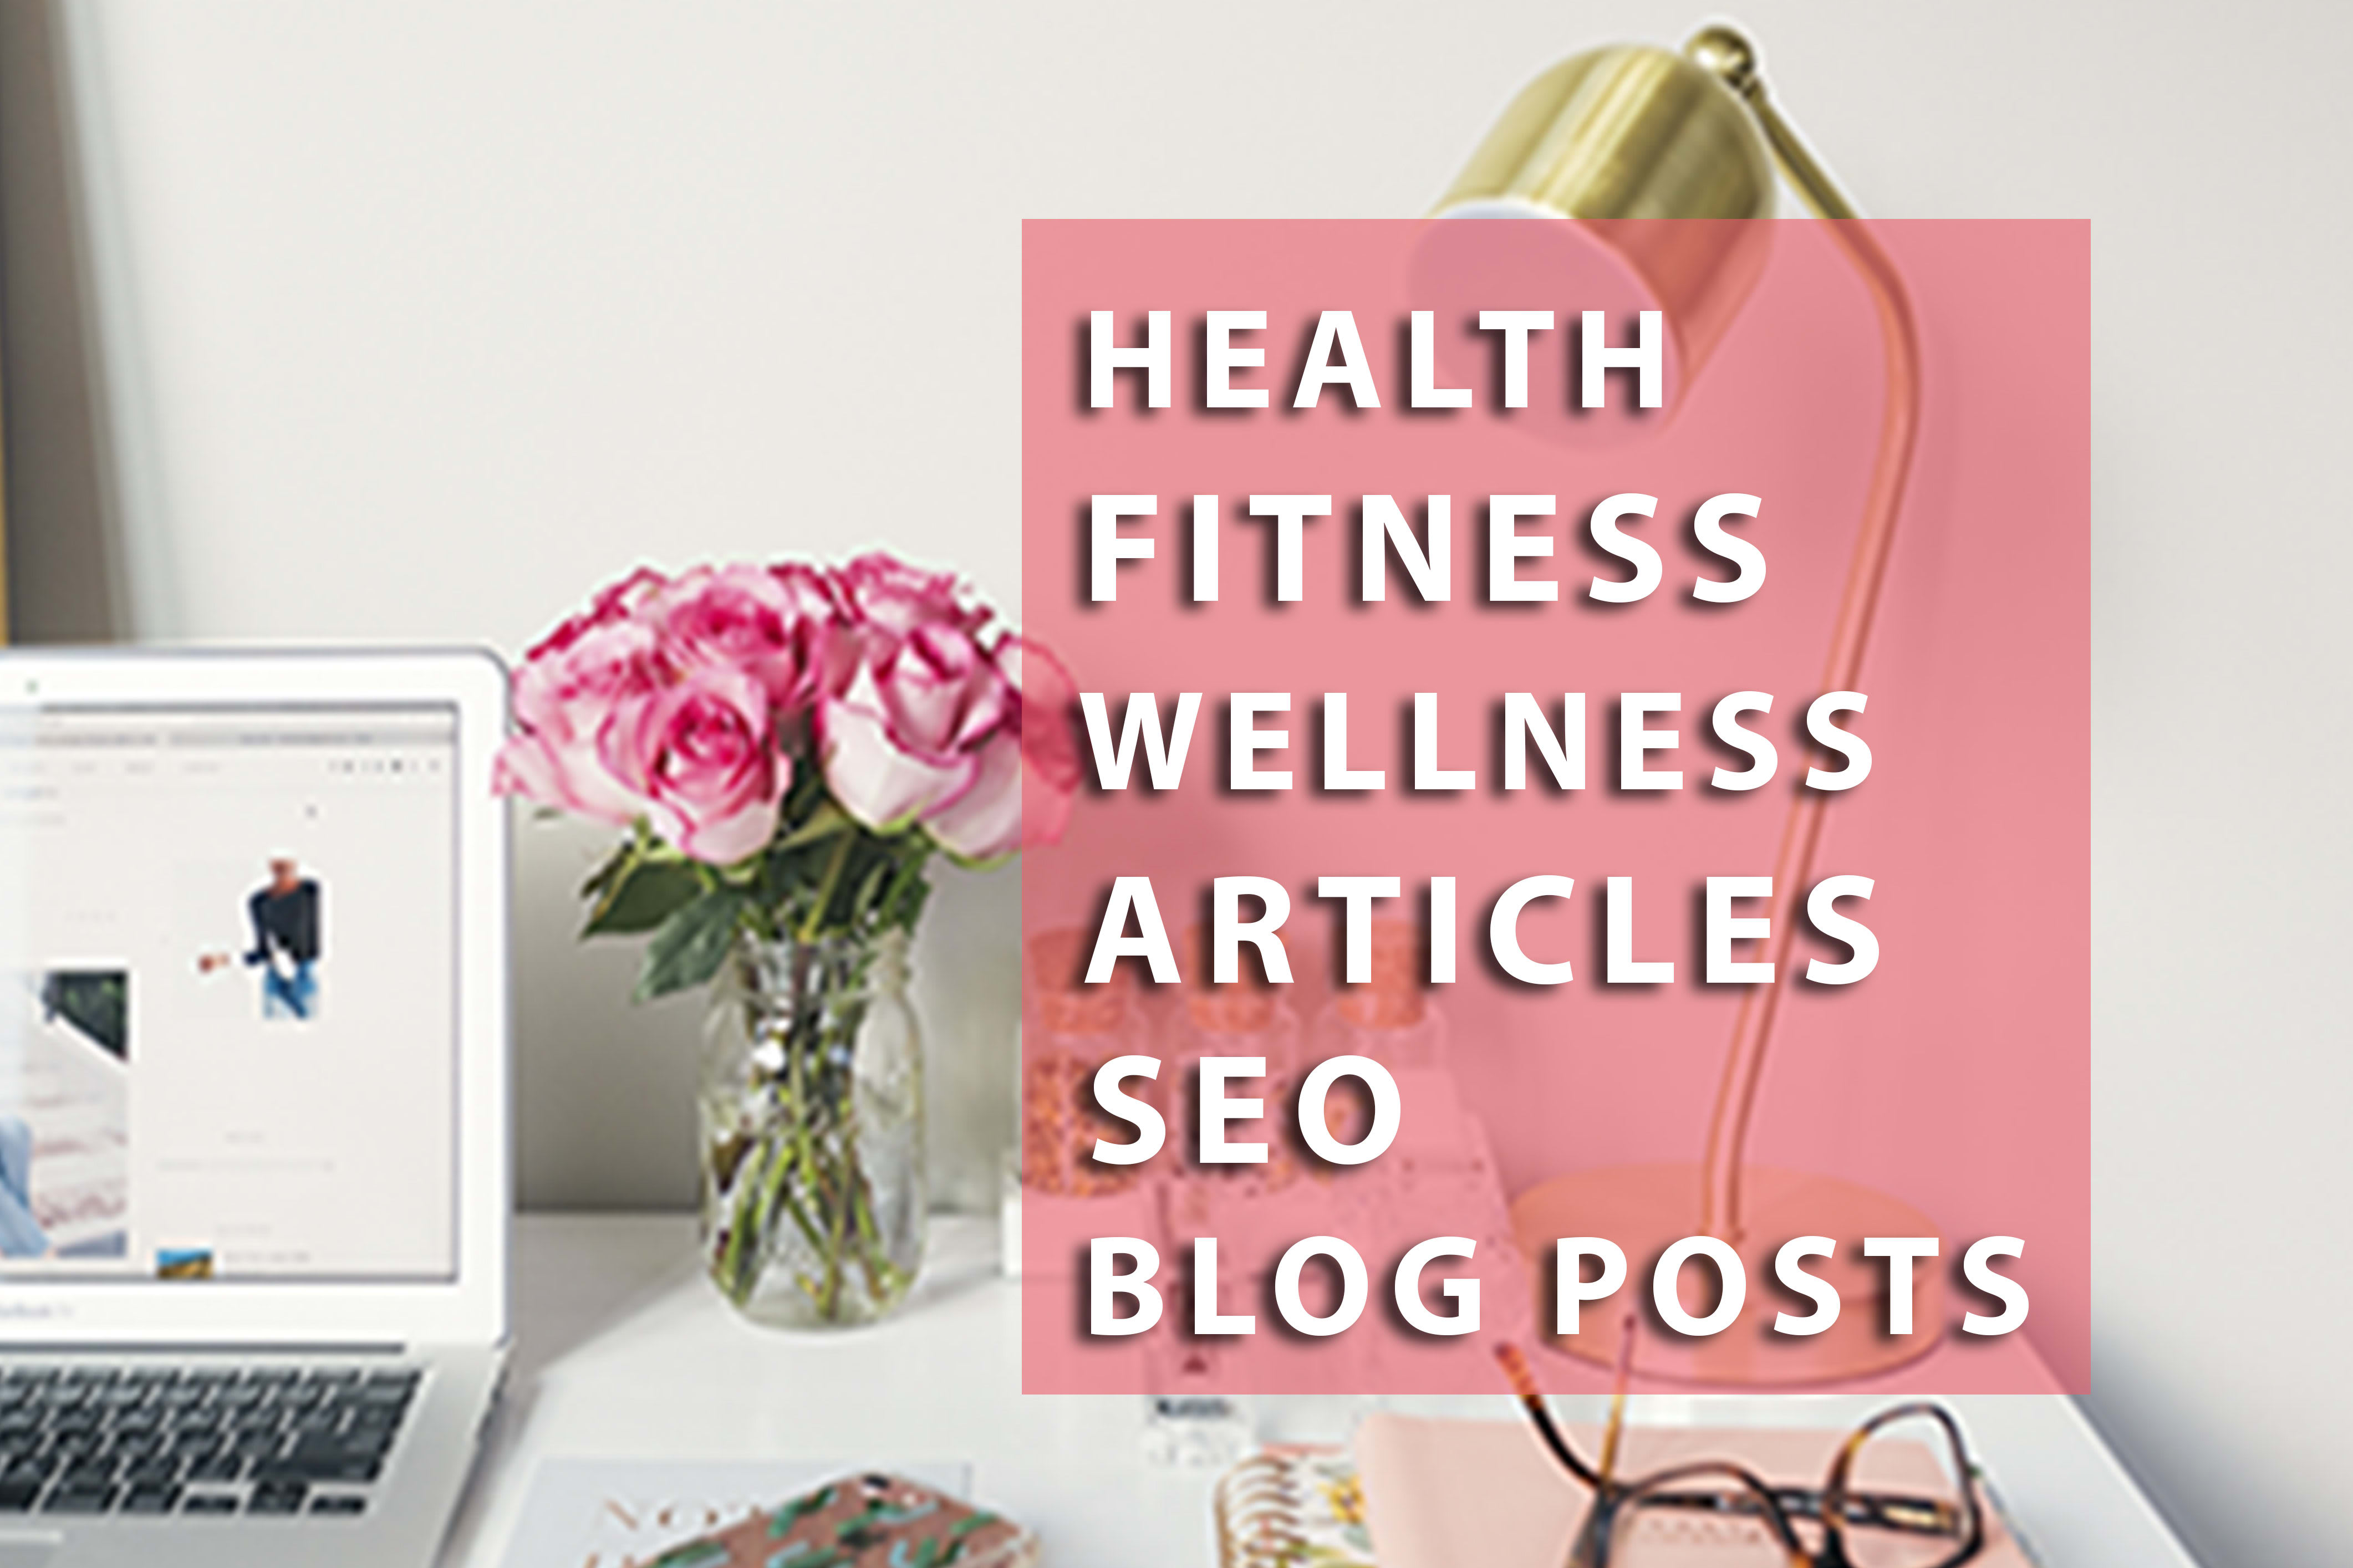 Portfolio for Medical SEO Blogs & Articles